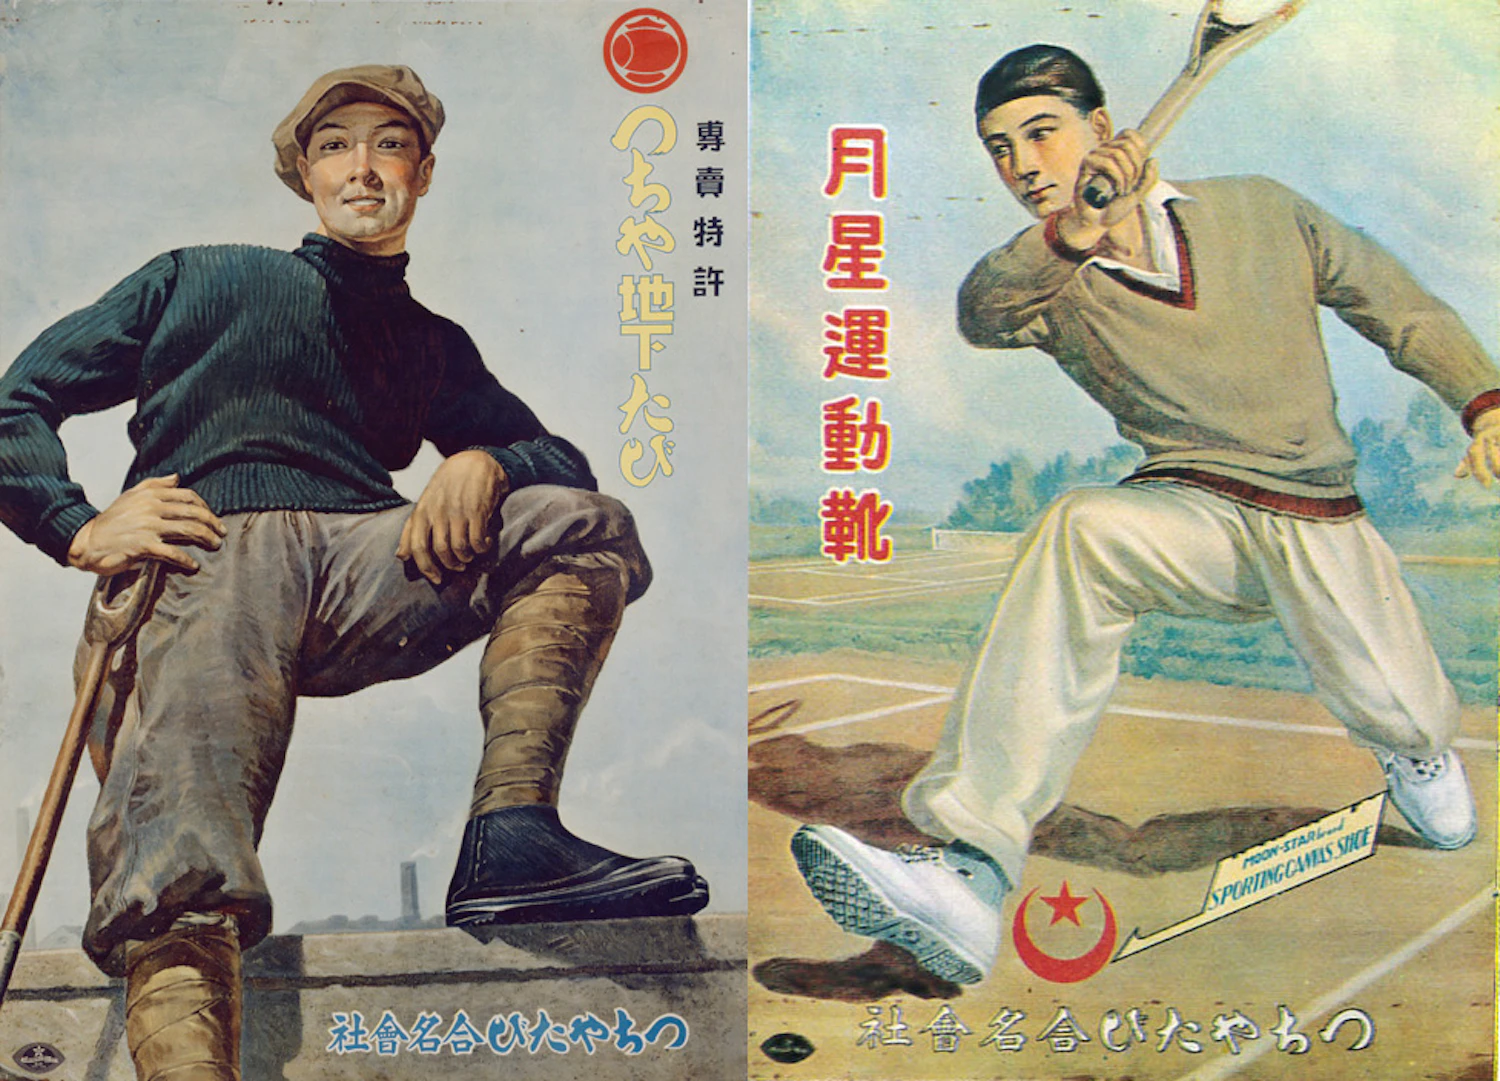 地下足袋と運動靴の広告、1920年代（大正時代）のもの